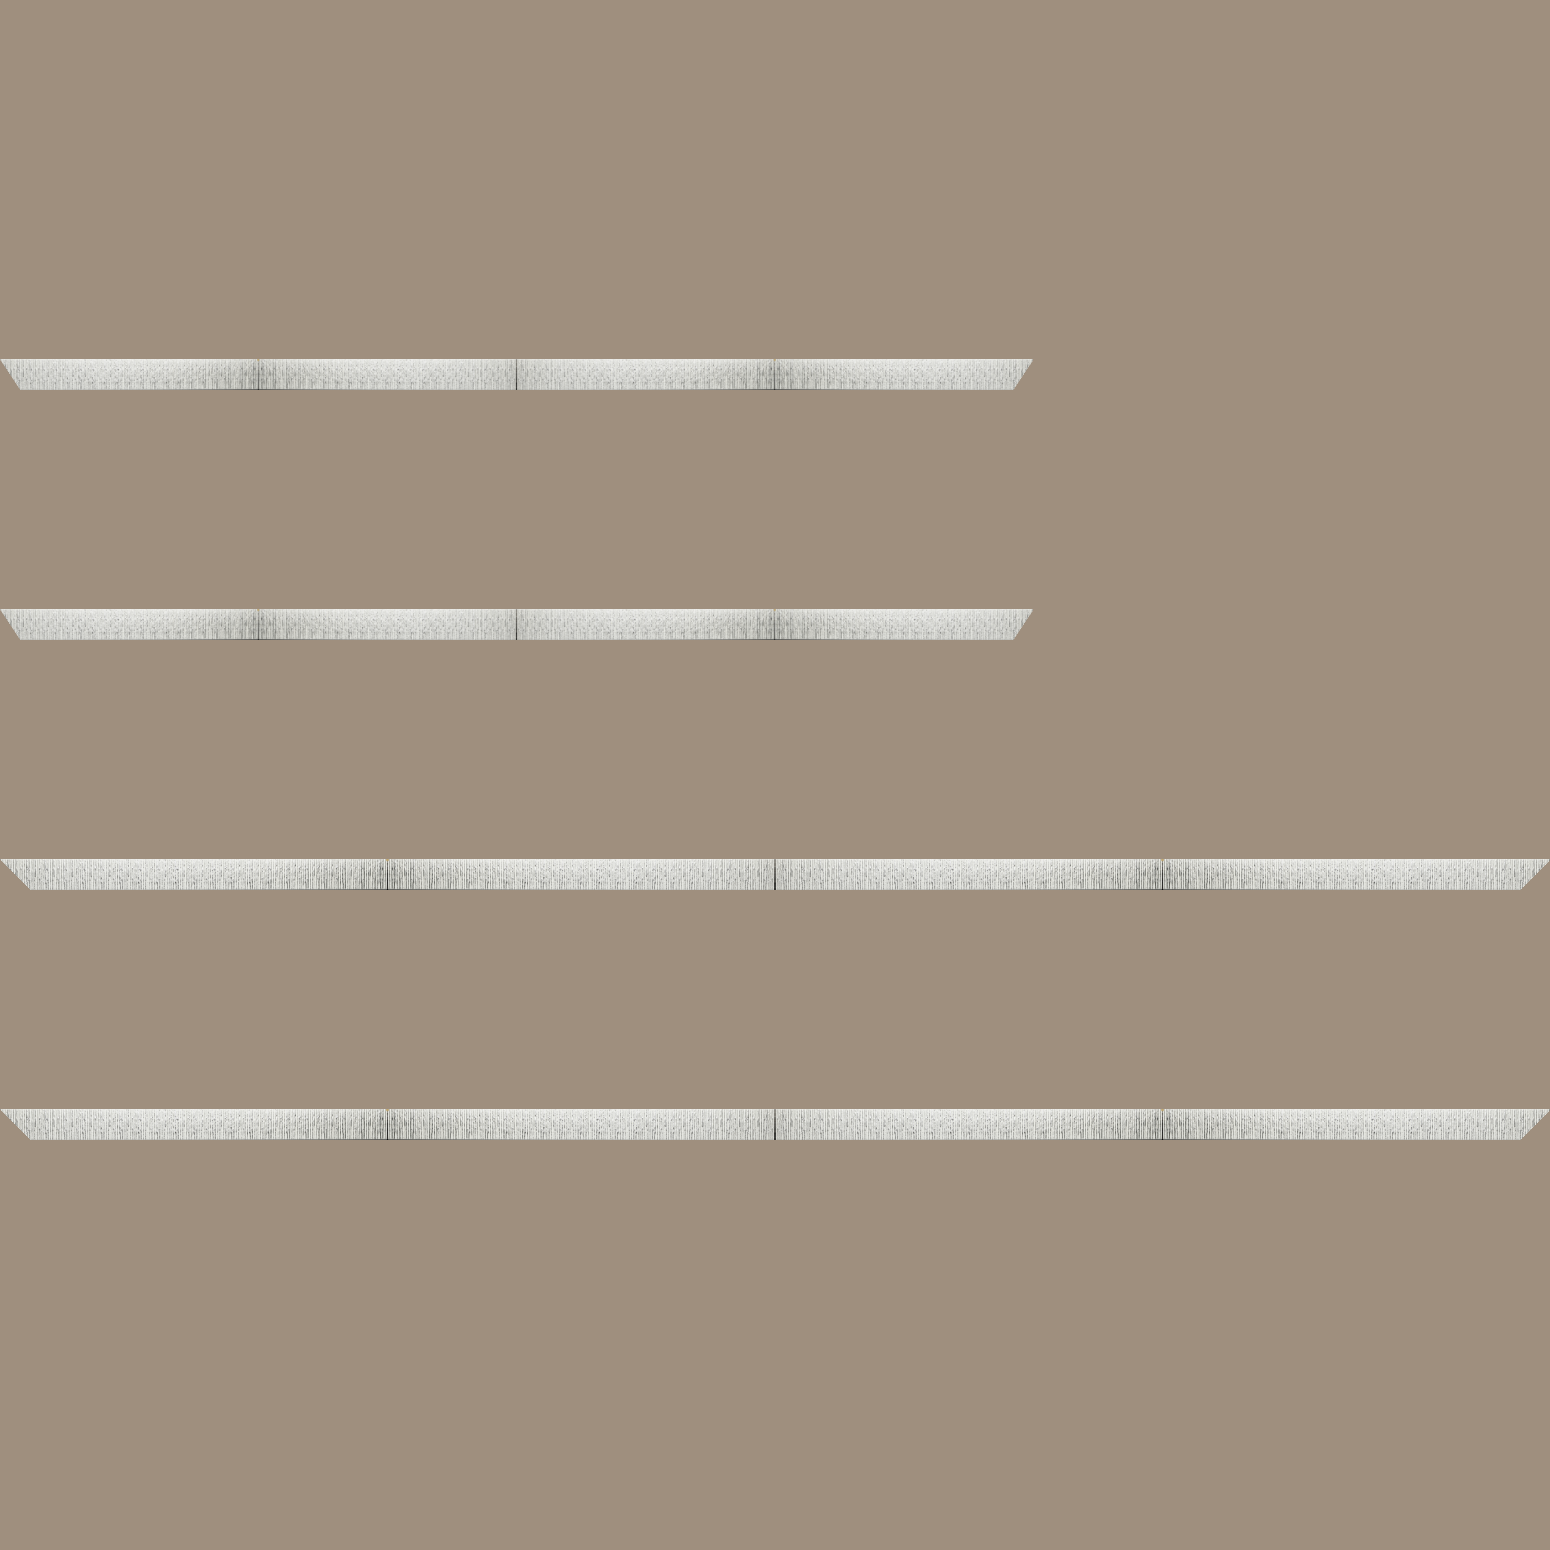 Baguette bois profil plat largeur 10.5cm couleur blanc mat strié argent chromé en relief - 92x60